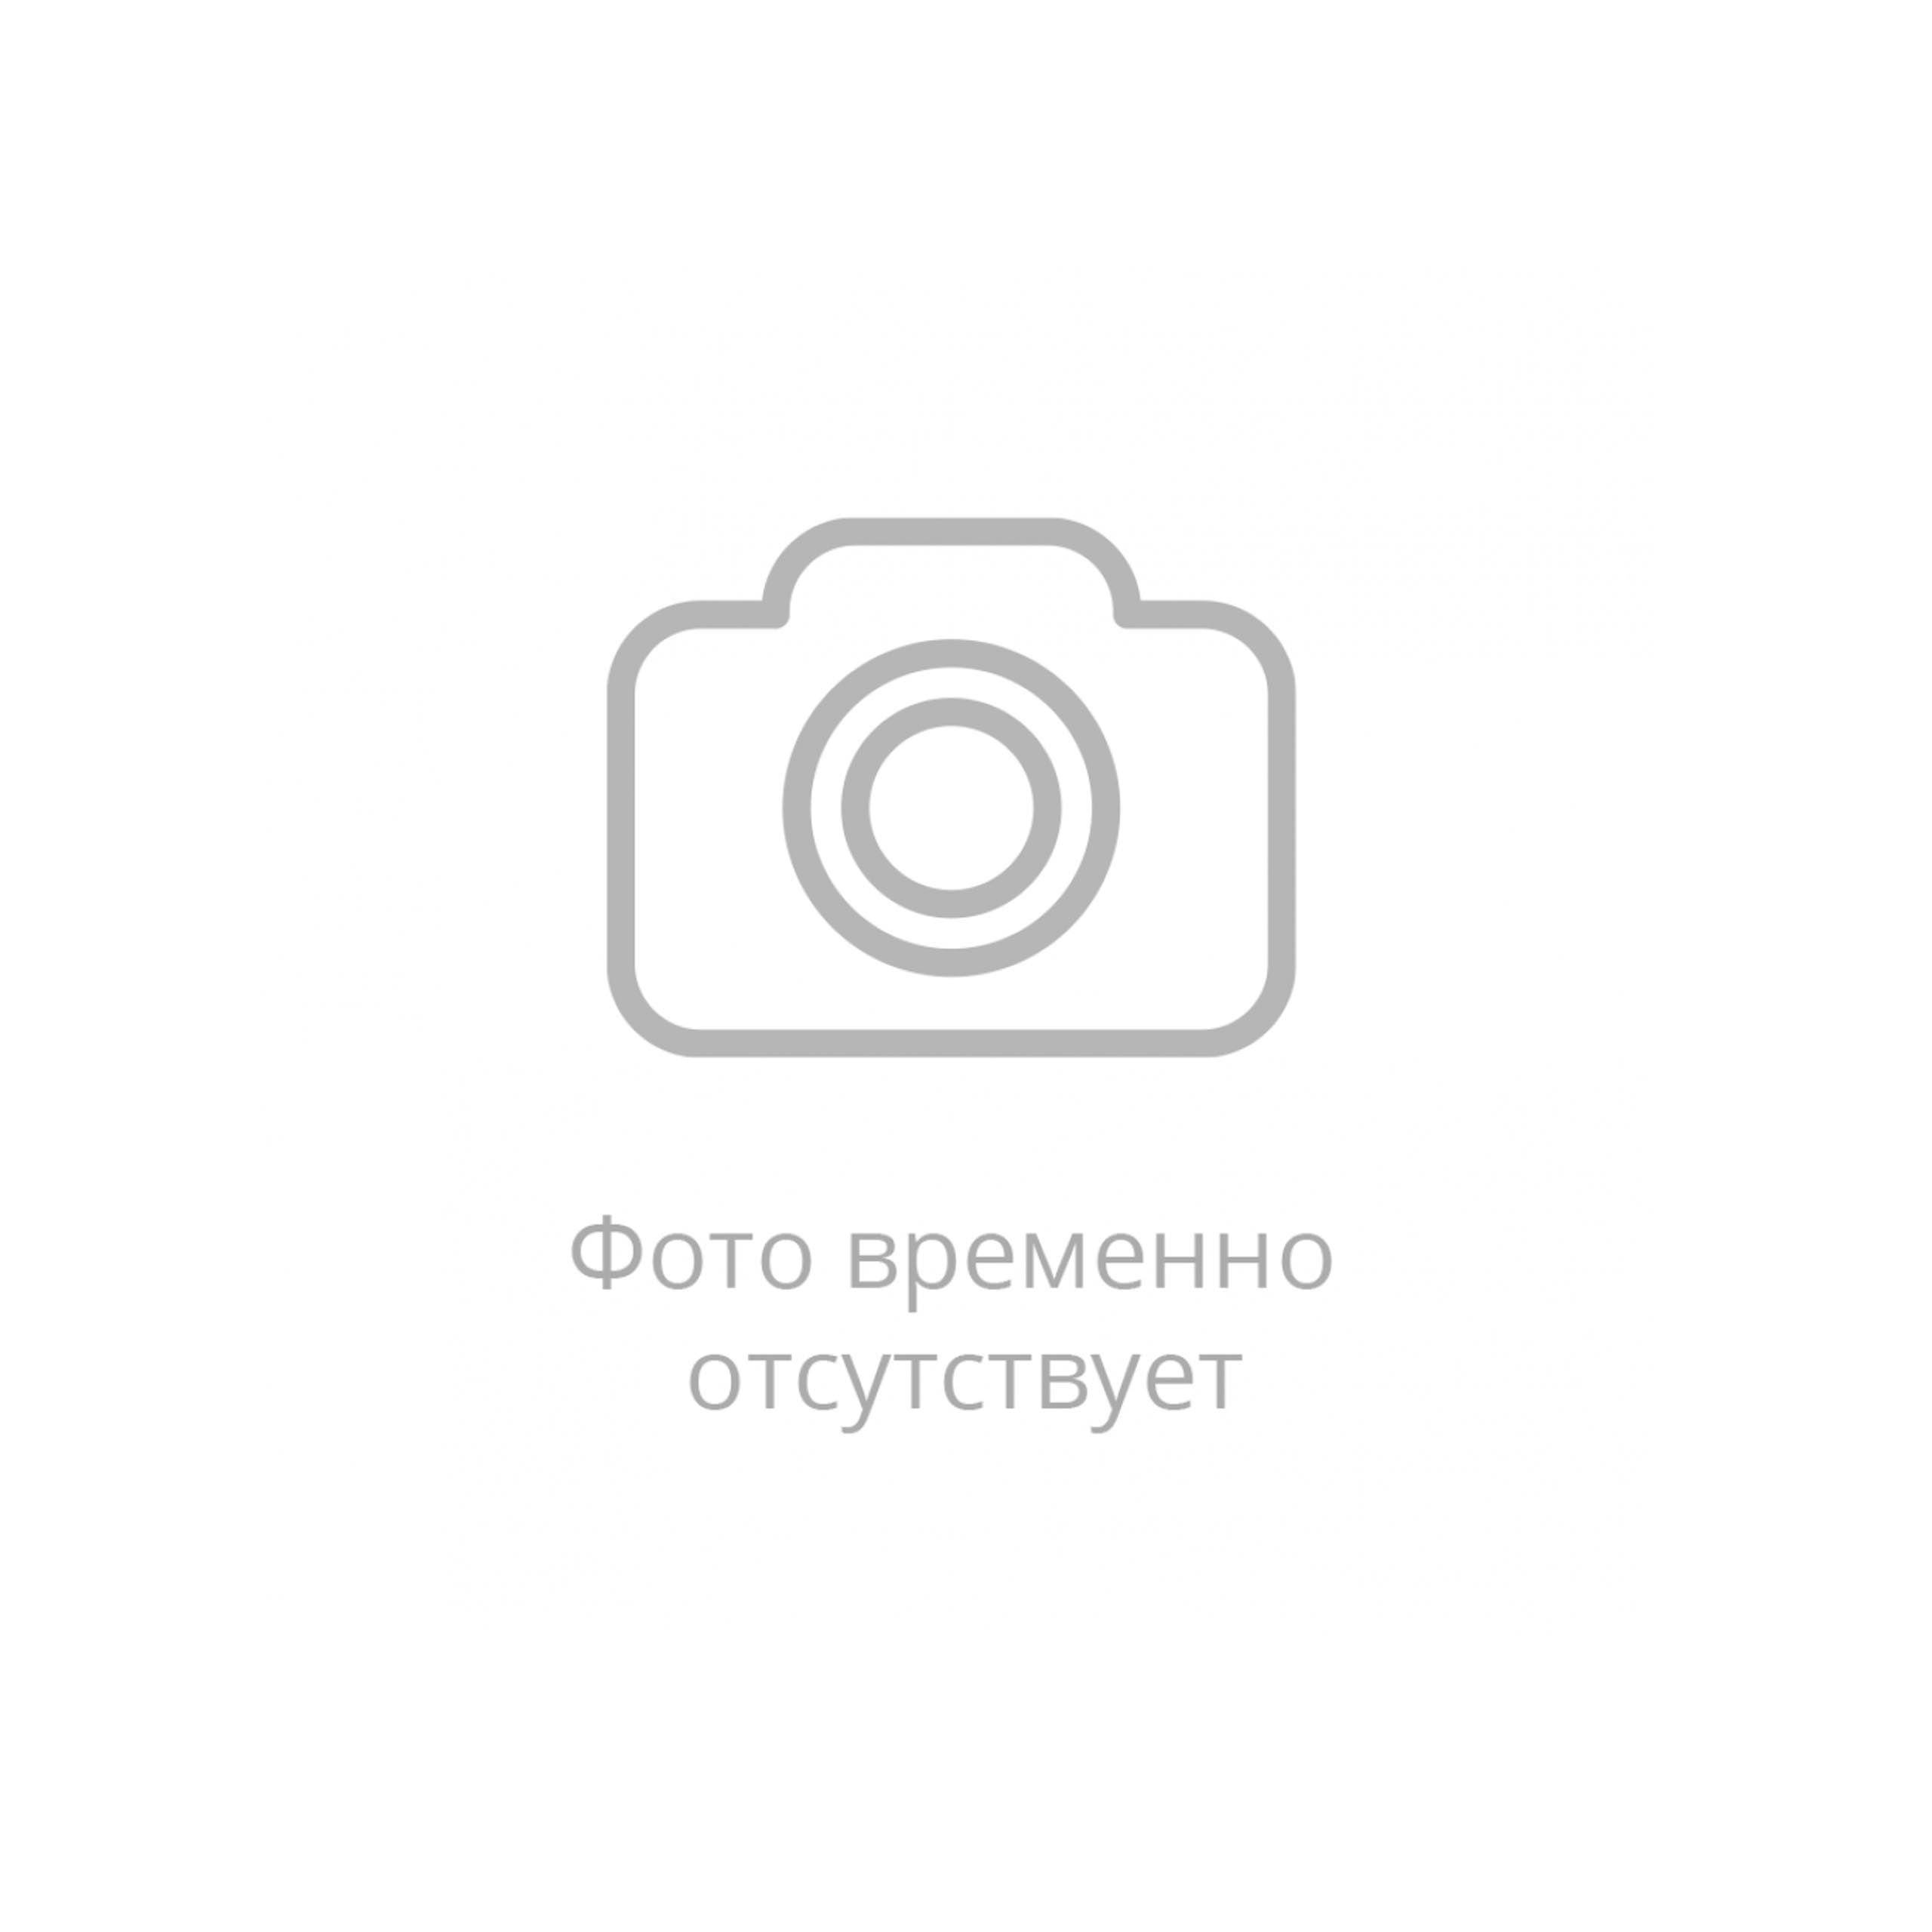 Рукав силиконовый вакуумный Ф 16 мм (0.5 МПа) Санкт-Петербург